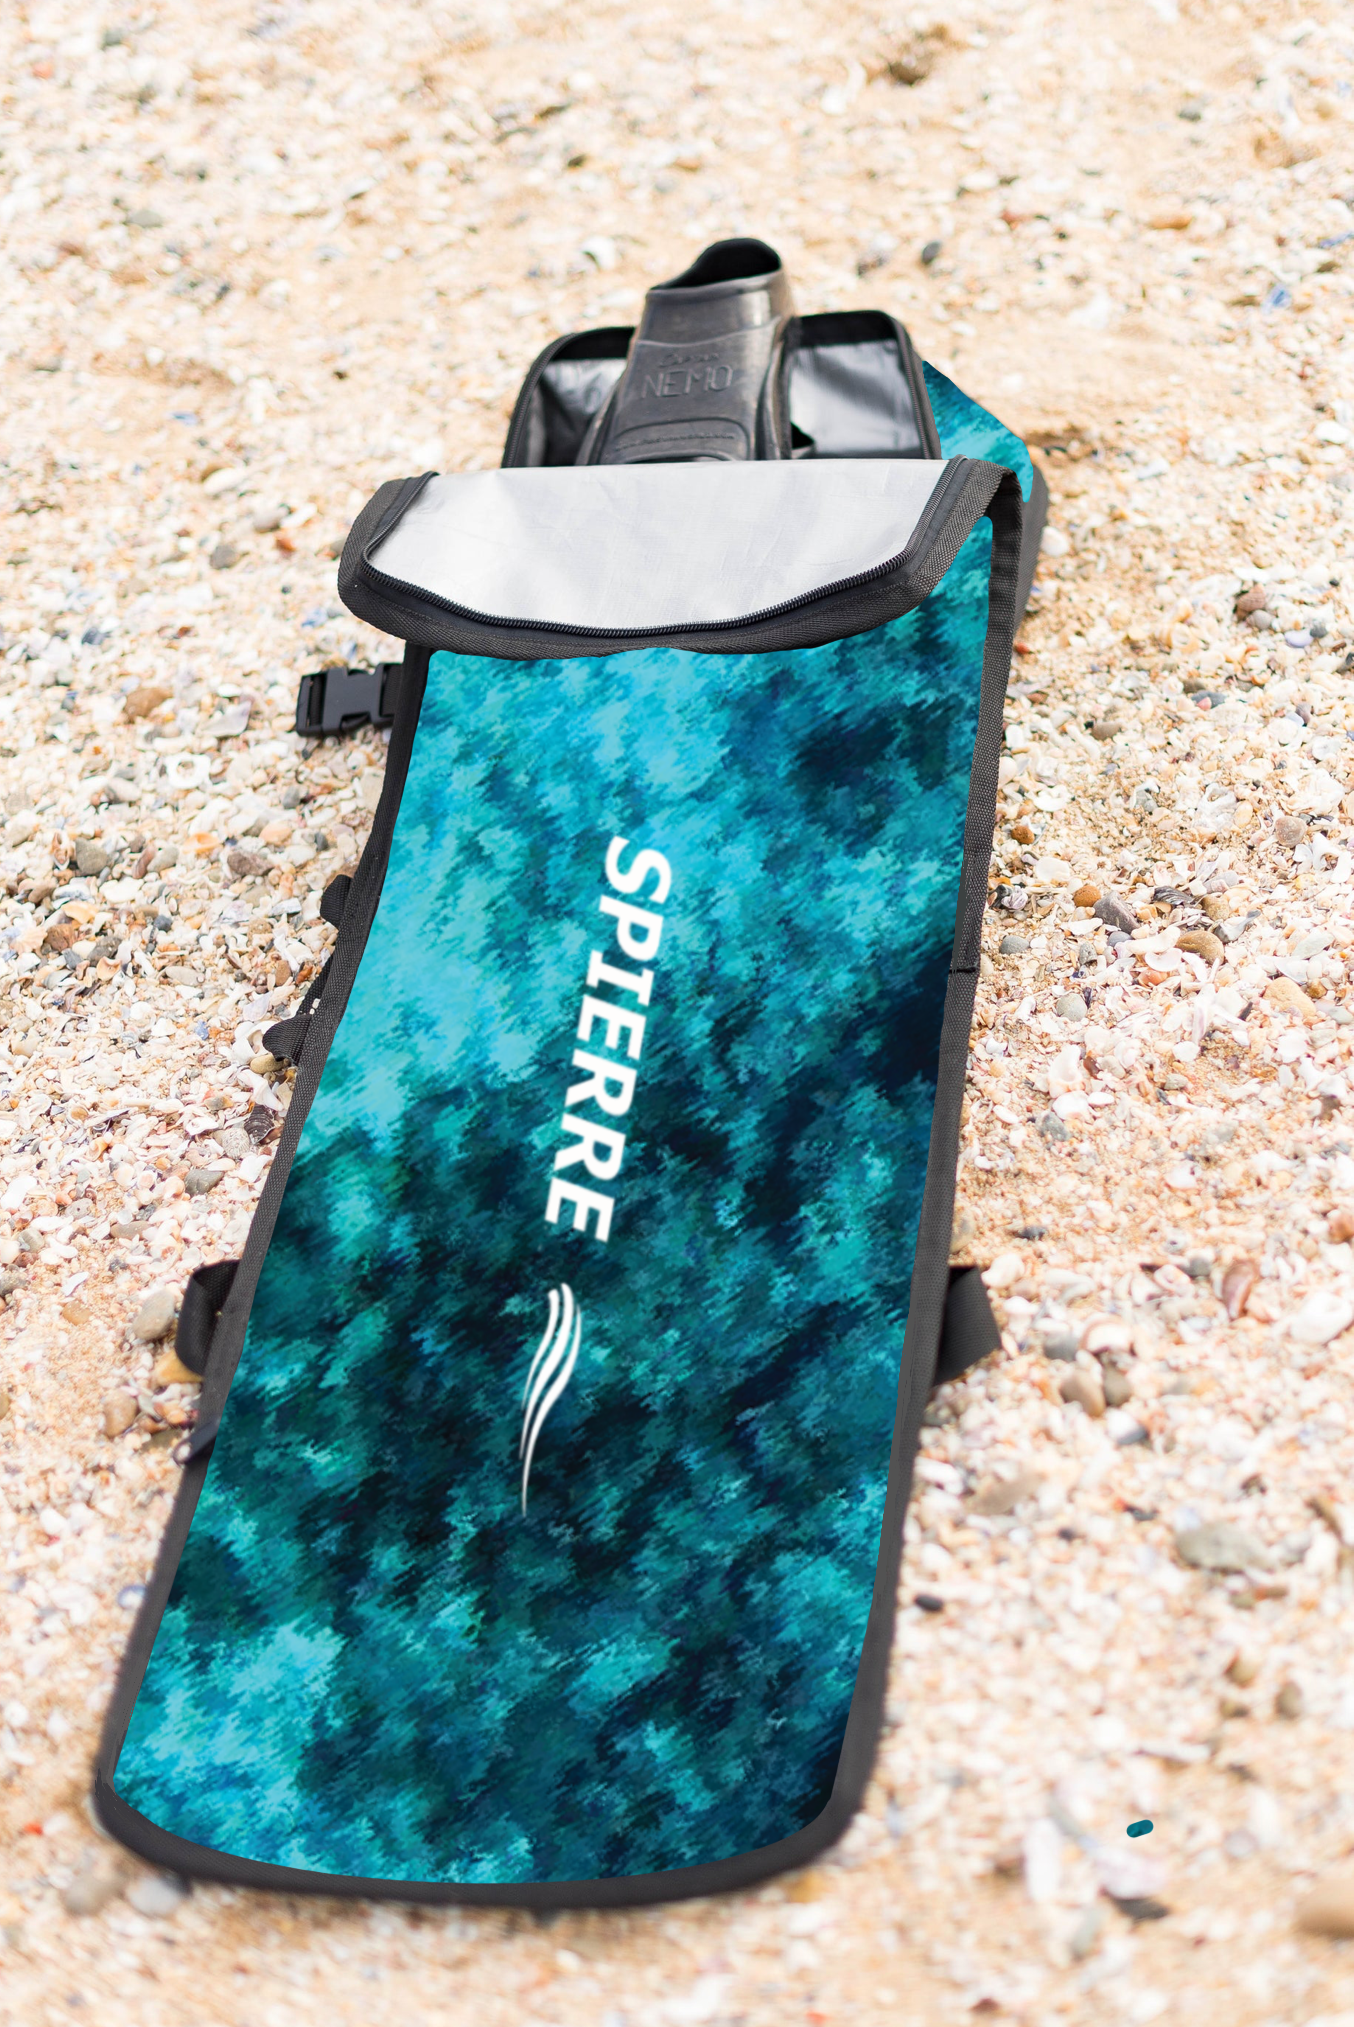 Spierre Padded Travel Fin Bag (Shorter Length) - Blue Ocean Reef Design